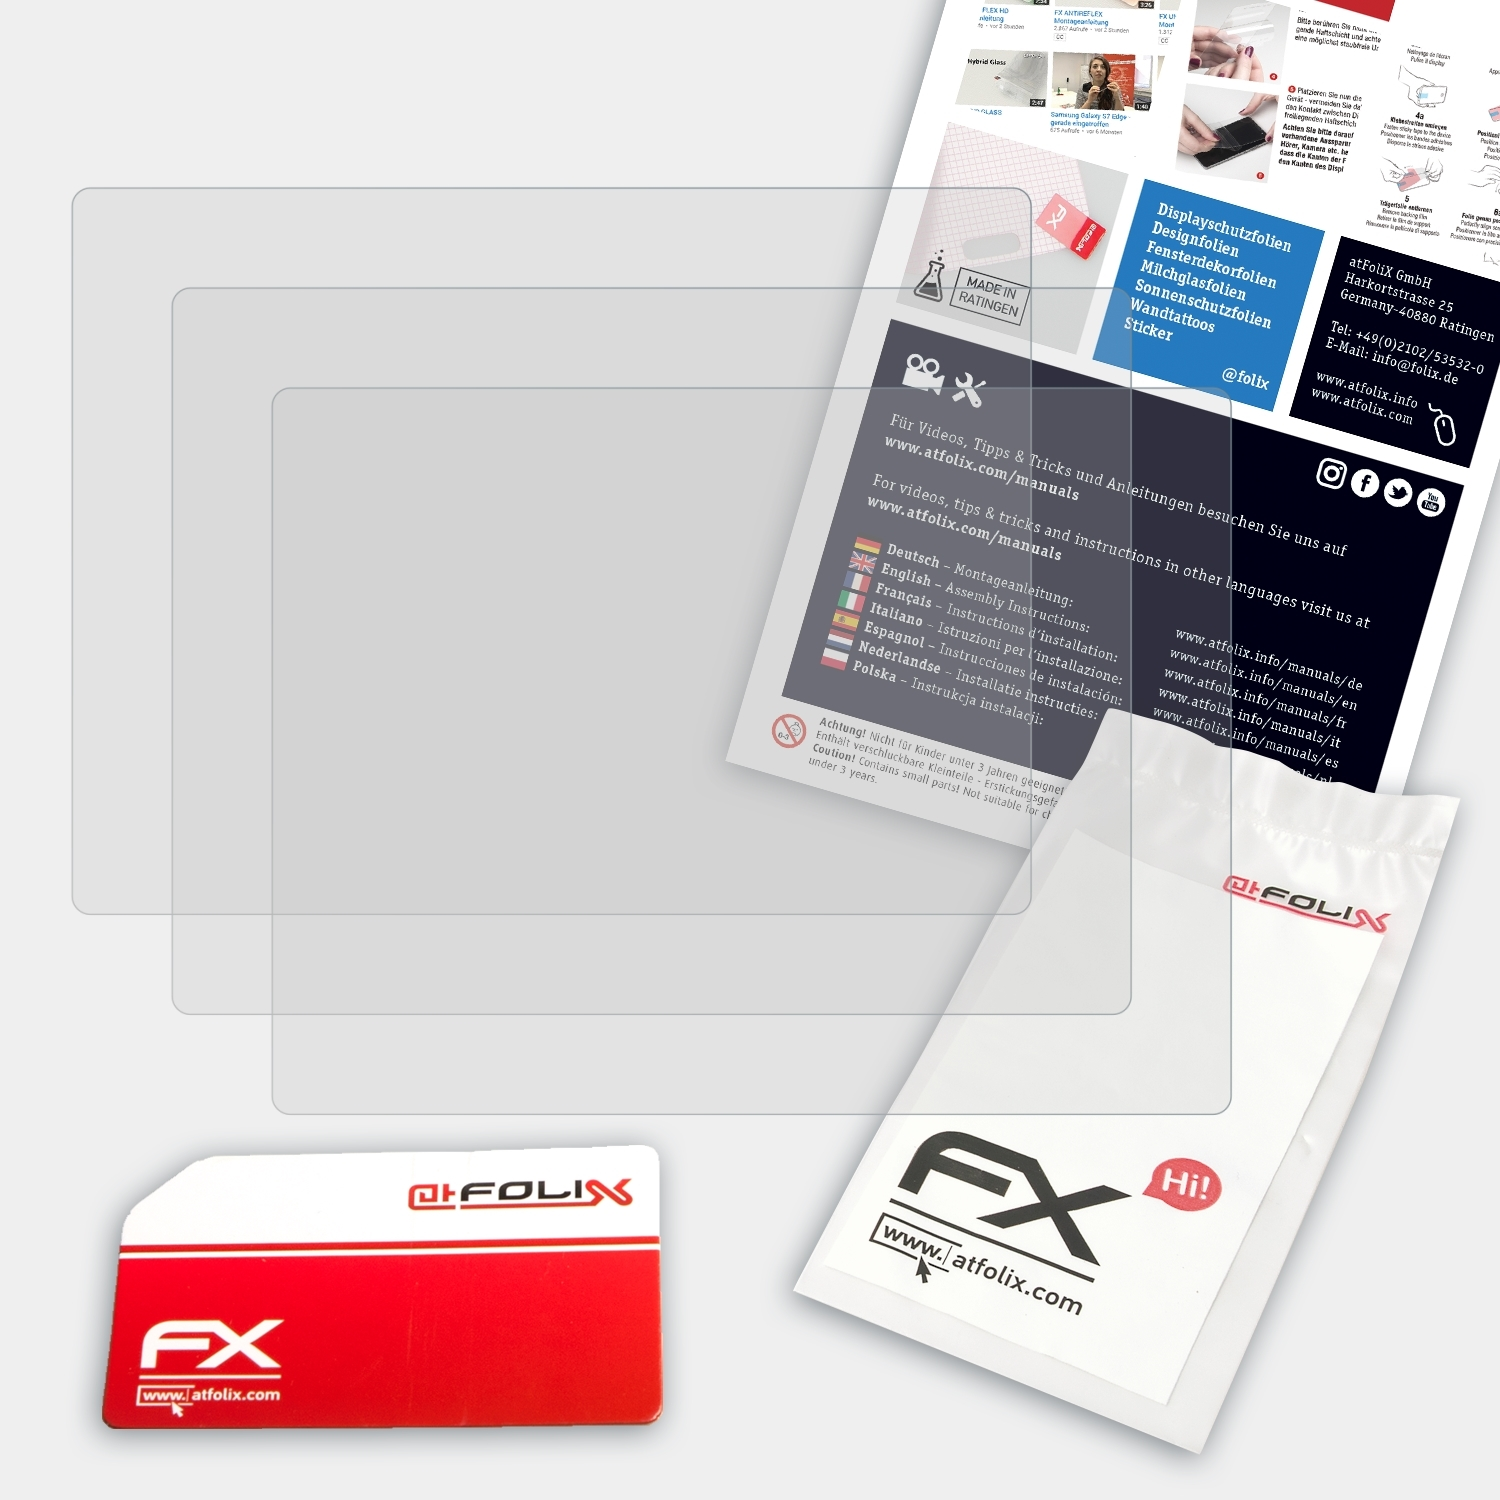 Zumo deluxe) 3x ATFOLIX FX-Antireflex Displayschutz(für 500 Garmin